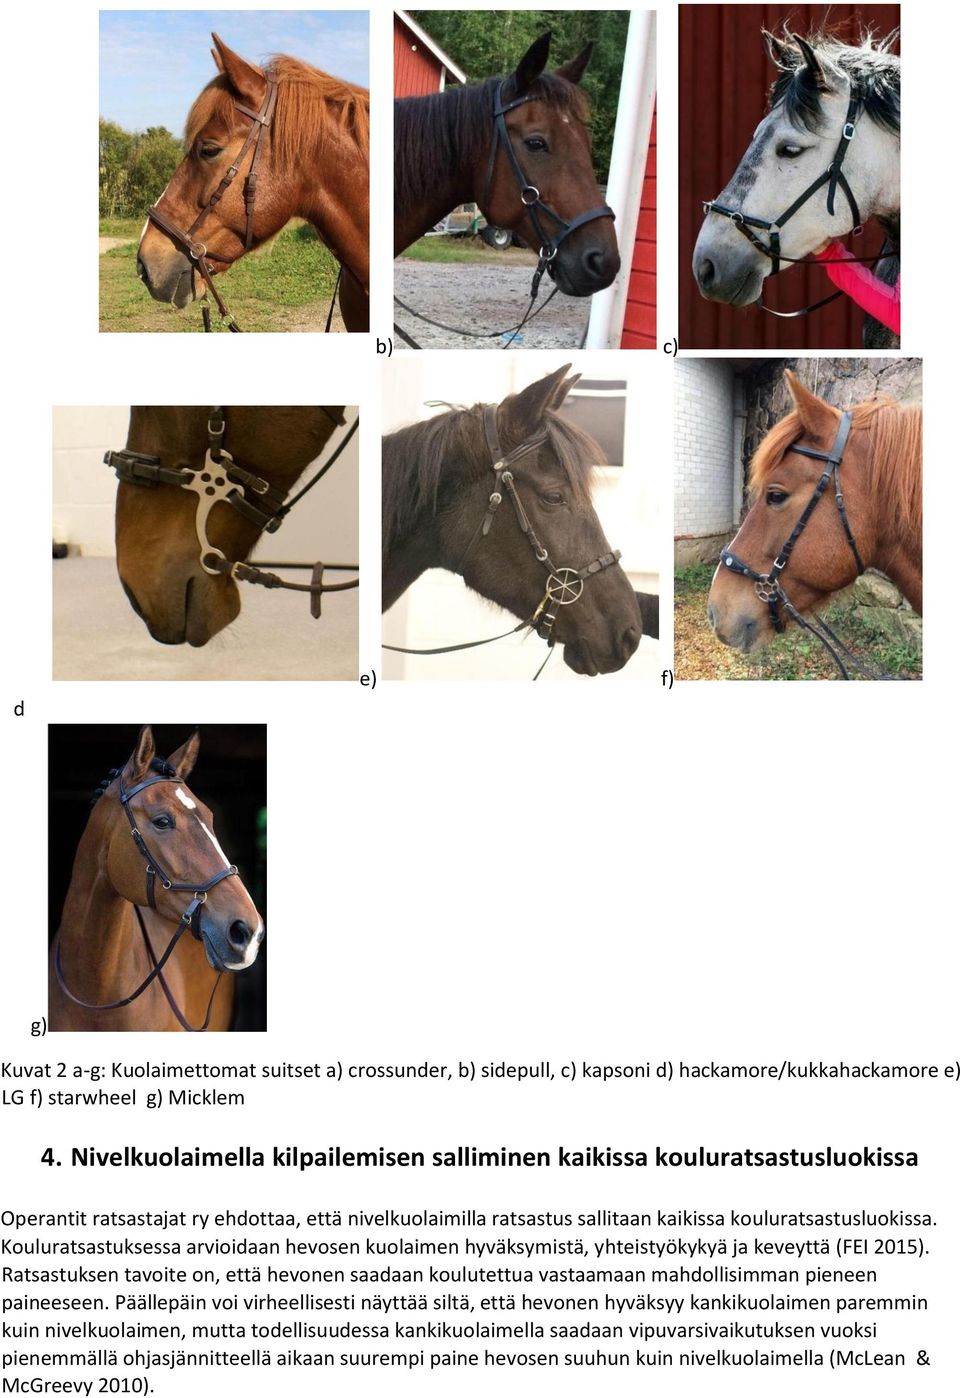 Kouluratsastuksessa arvioidaan hevosen kuolaimen hyväksymistä, yhteistyökykyä ja keveyttä (FEI 2015).